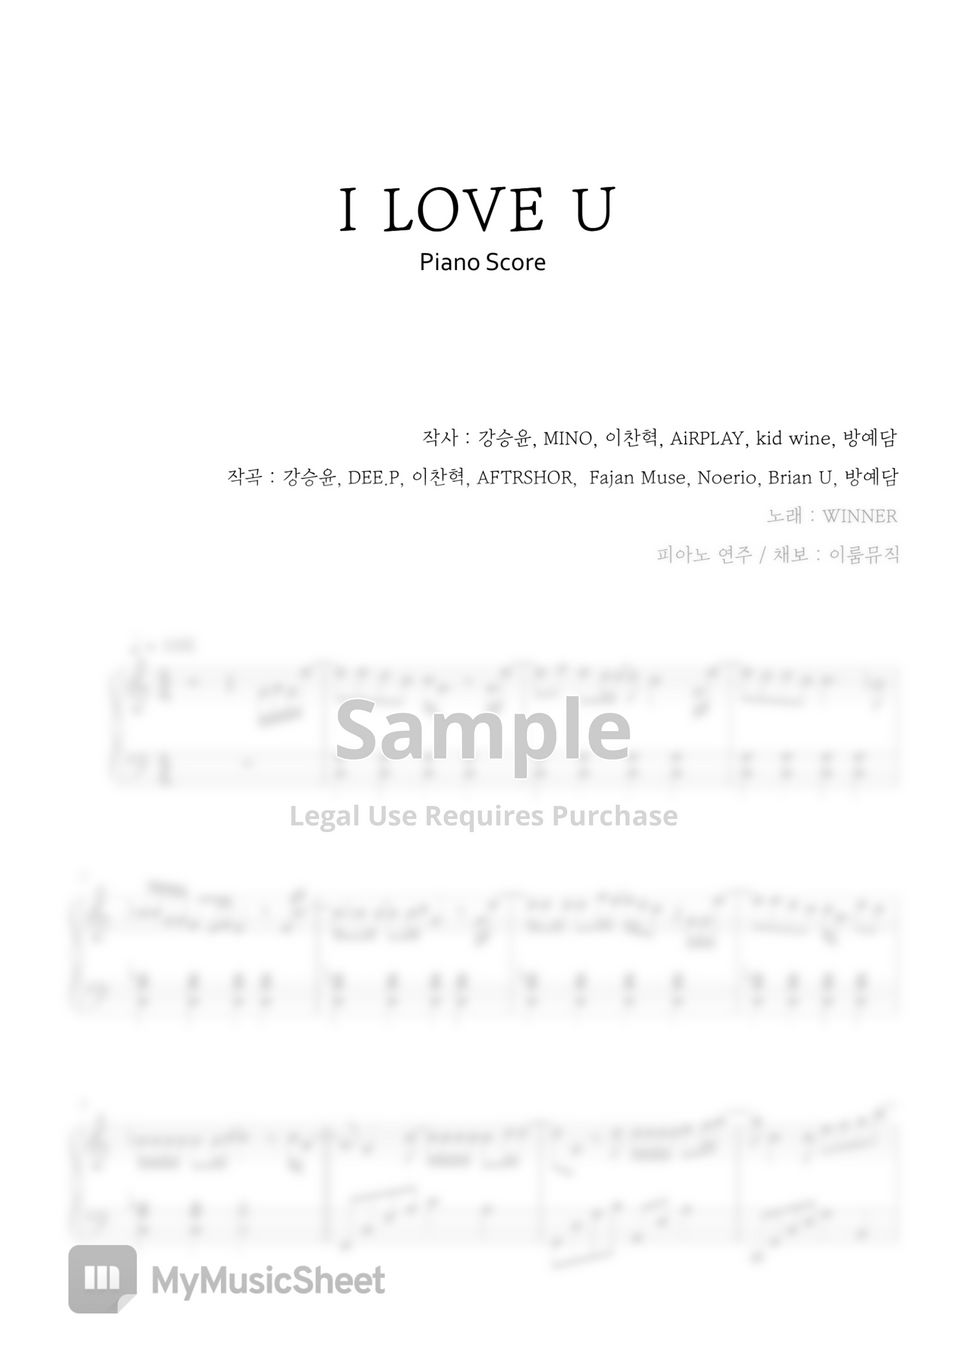 WINNER - I LOVE U (Original Key) by IRUM MUSIC